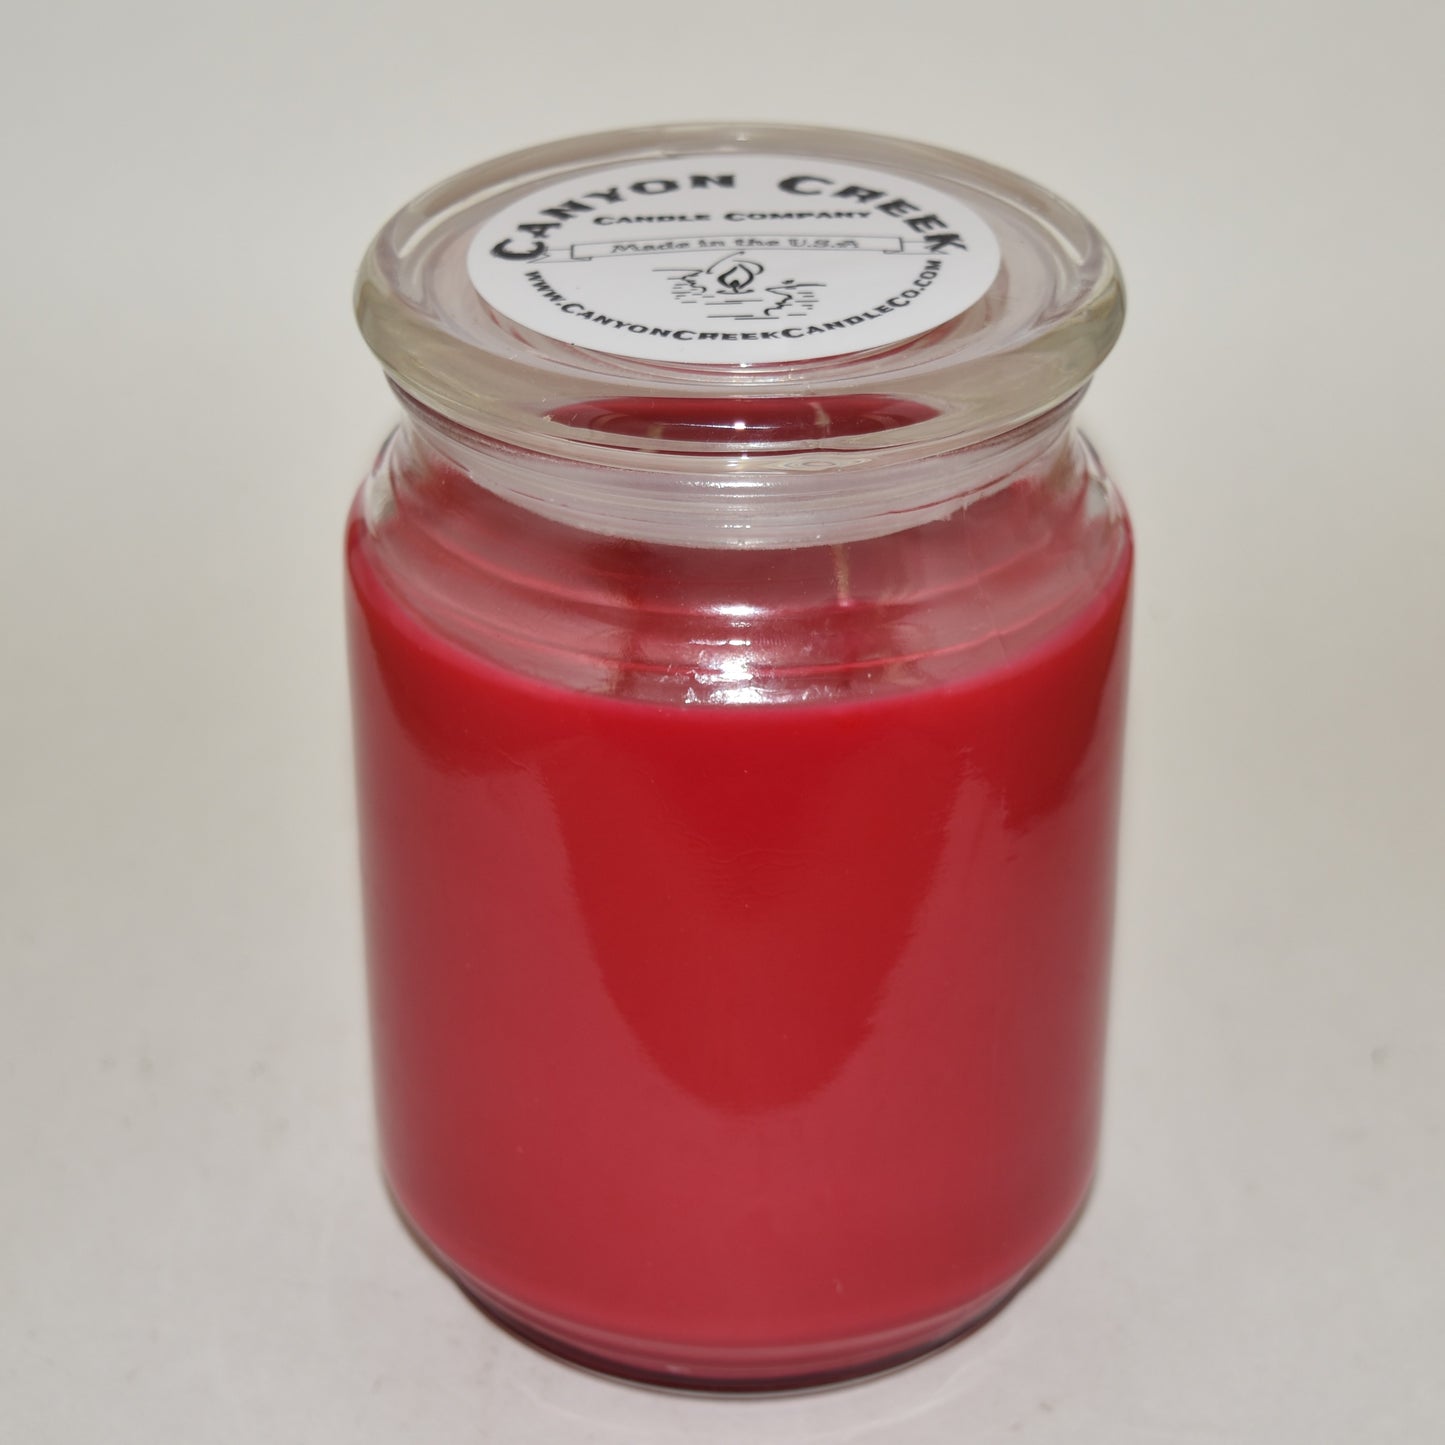 Cinnaberry 20oz jar candle